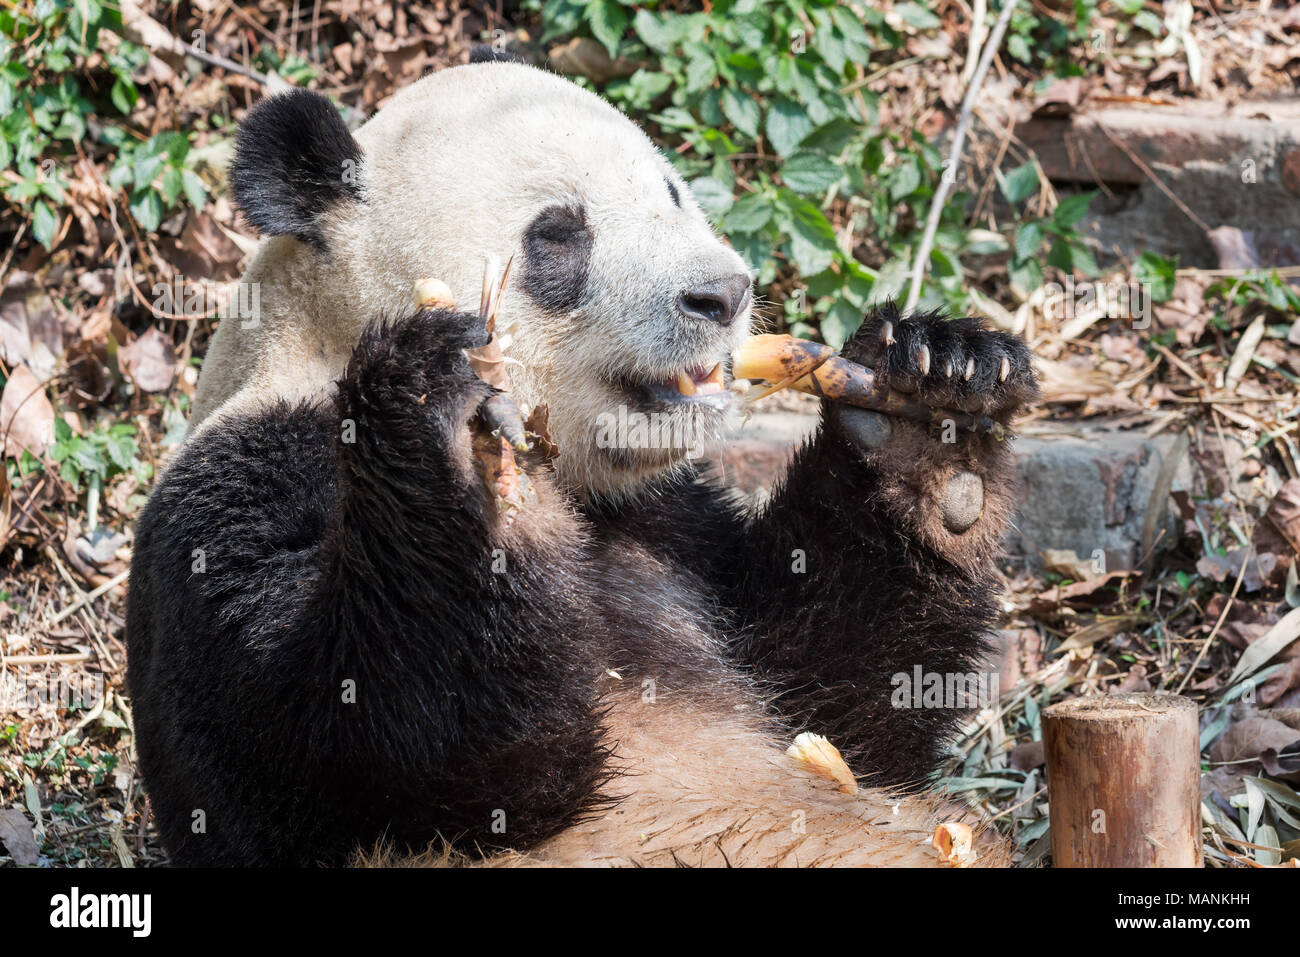 Panda gigante comiendo bambú closeup, Chengdu, China Foto de stock